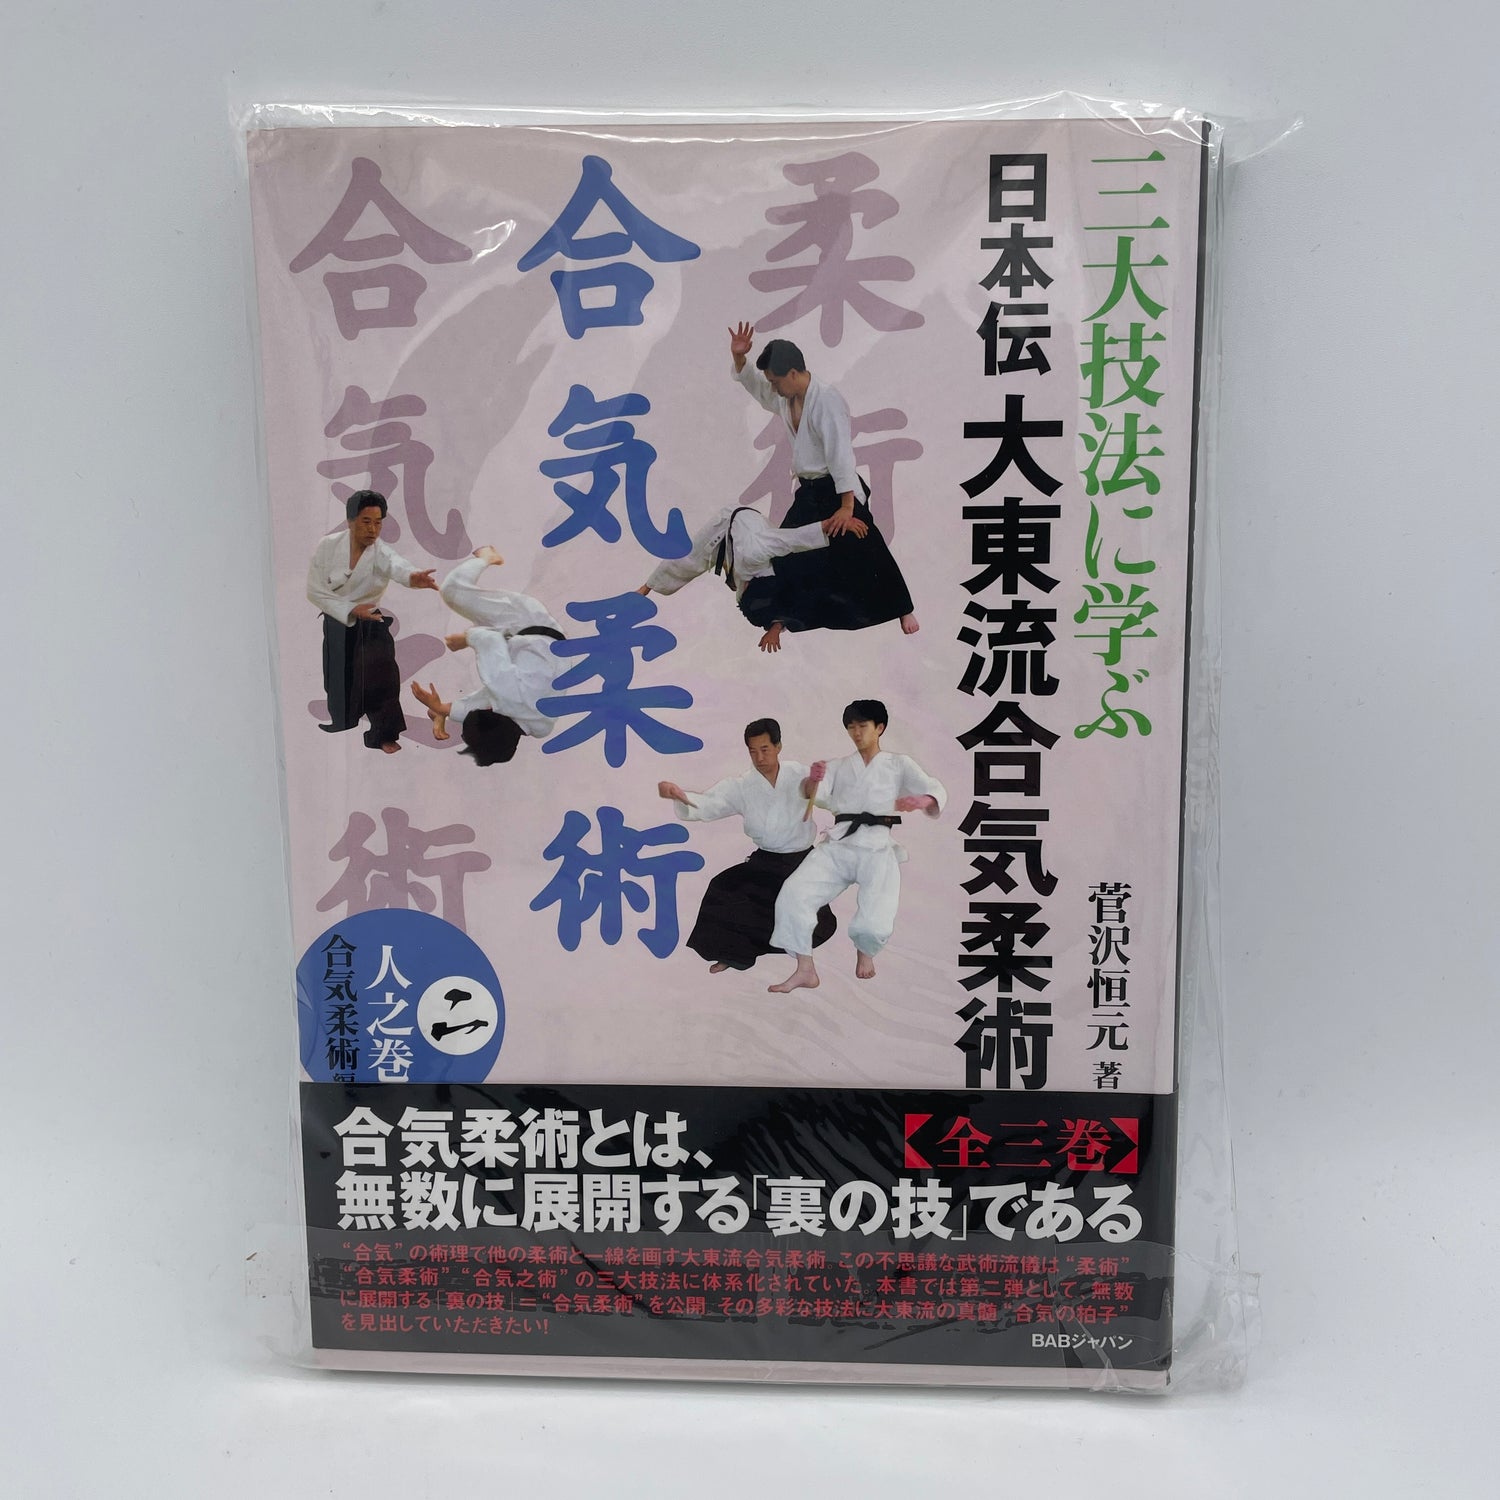 Nihonden Daito Ryu Aikijujutsu Libro 2: Aikijujutsu de Kogen Sugasawa (usado) 